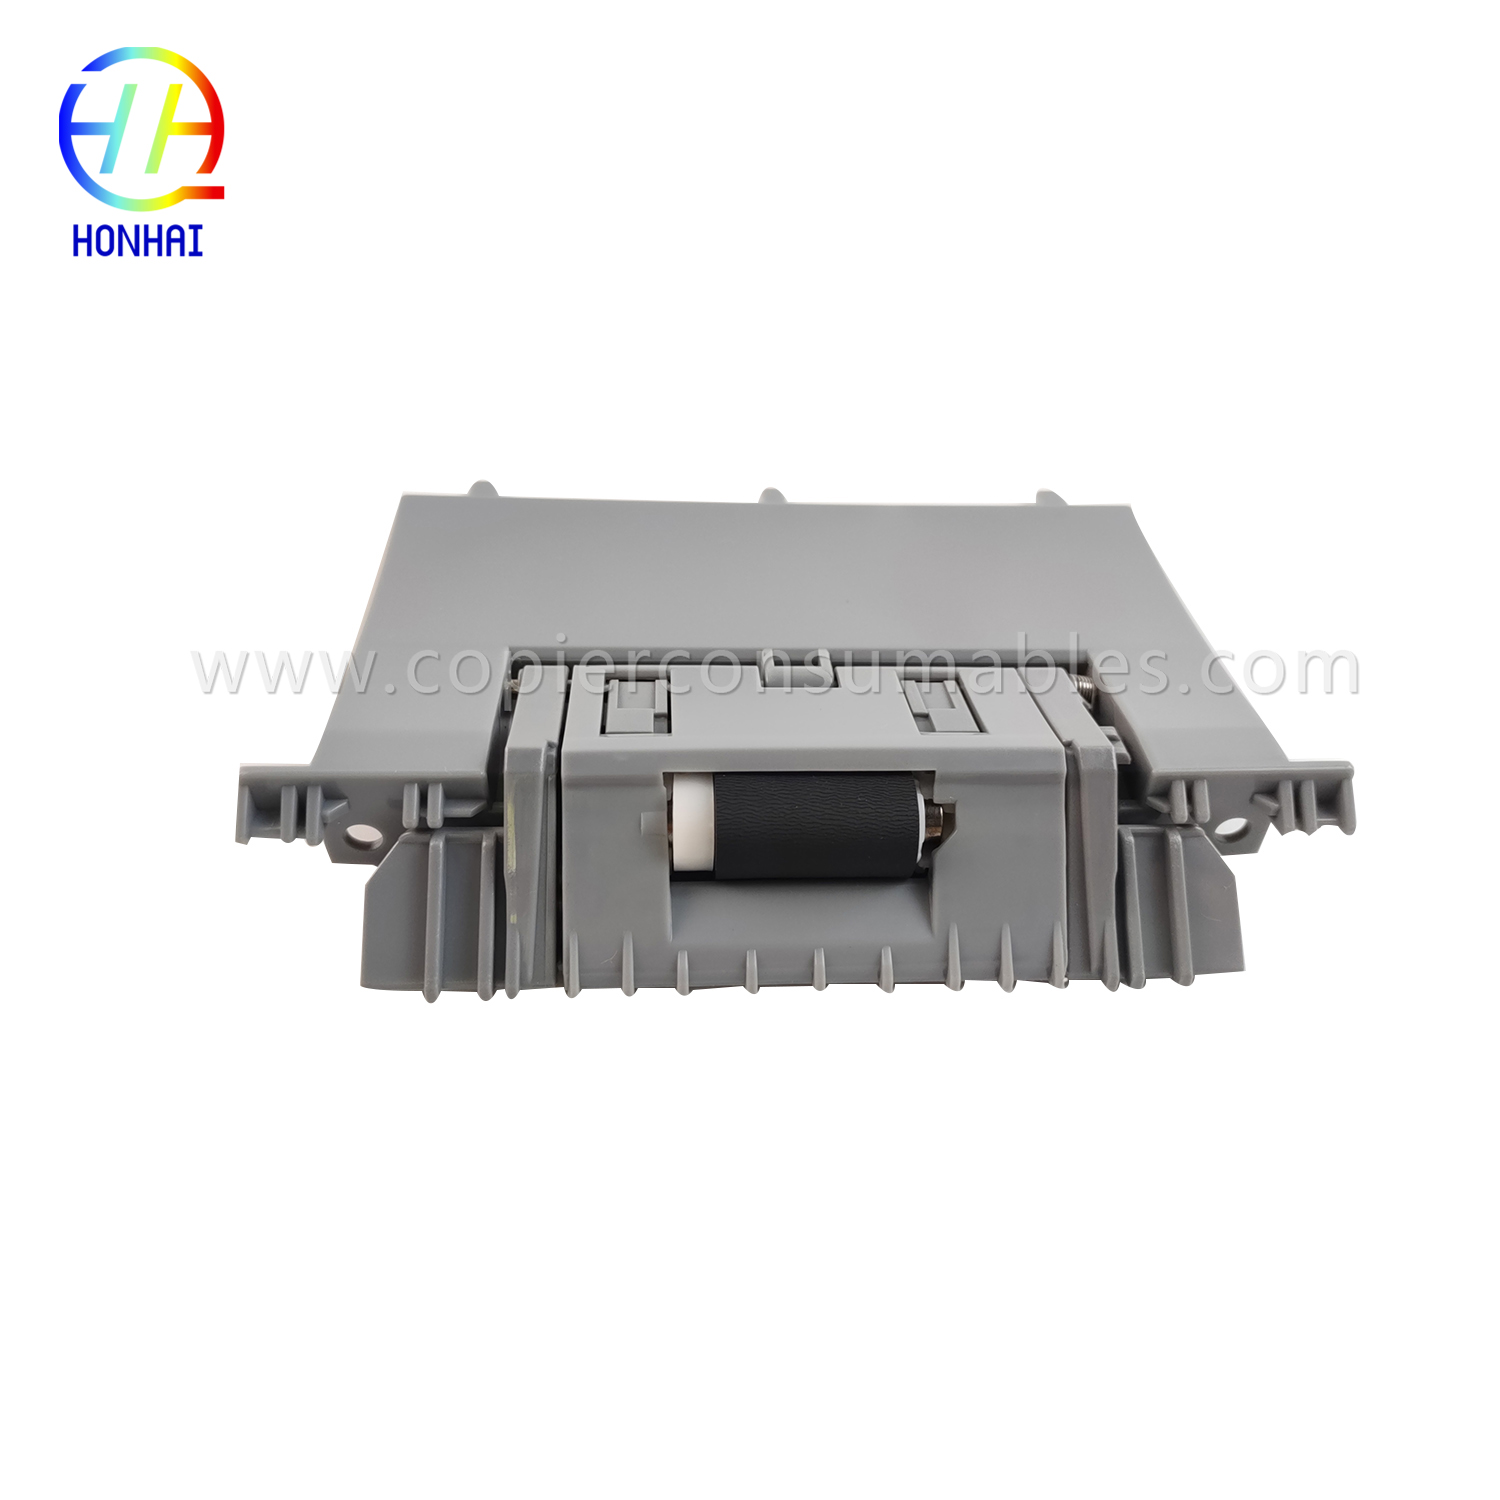 https://www.copierhonhaitech.com/sm/separation-roller-assemble-cassette-for-hp-laserjet-enterprise-500-color-m551dn-rm18129000cn-rm1-8129-000cn-oem-product/